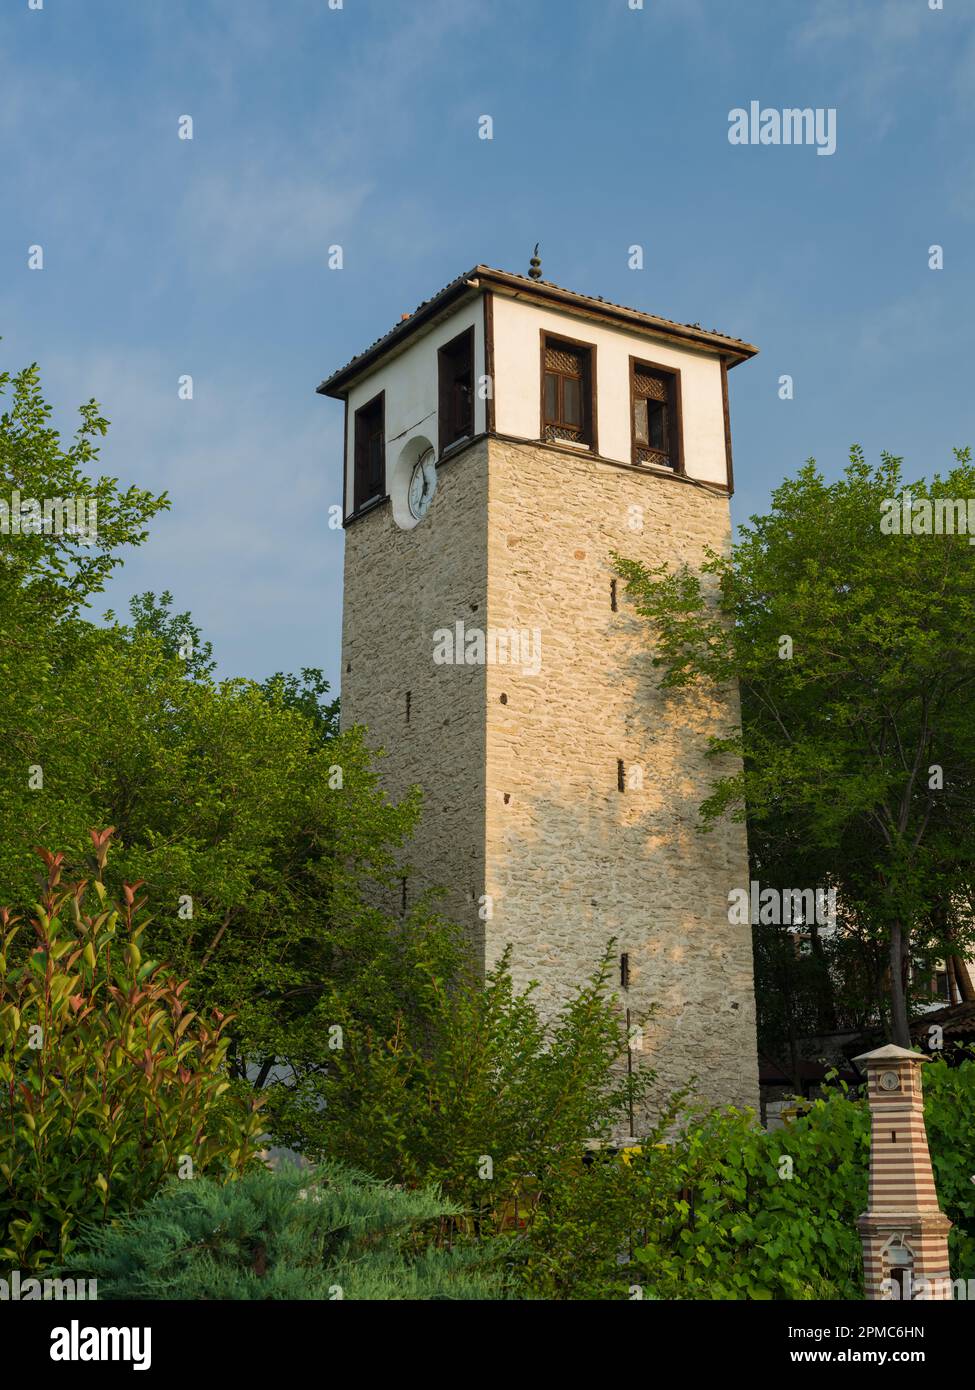 Safranbolu Uhrenturm. Osmanische Architektur. Es steht auf der Liste des UNESCO-Weltkulturerbes. Reiseziele in der Türkei. Karabuk, Türkiye Stockfoto